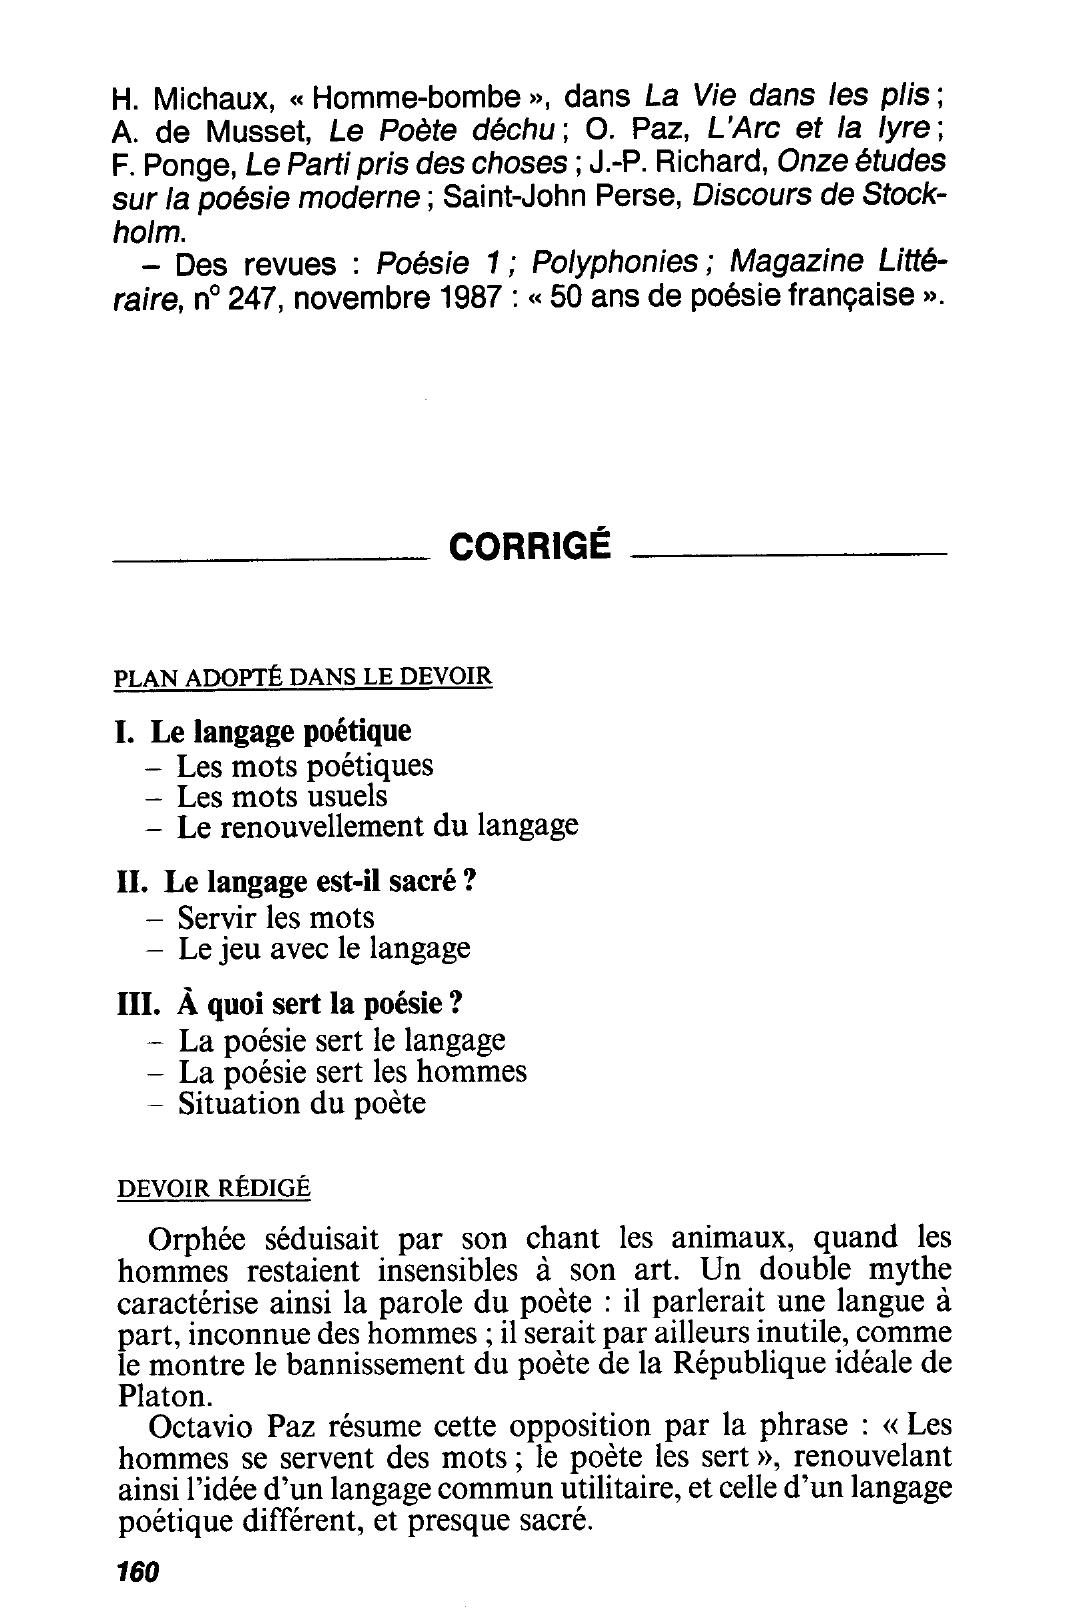 Prévisualisation du document « Les hommes se servent des mots ; le poète les sert. » Octavio Paz, Prix Nobel de littérature 1990, L'Arc et la Lyre